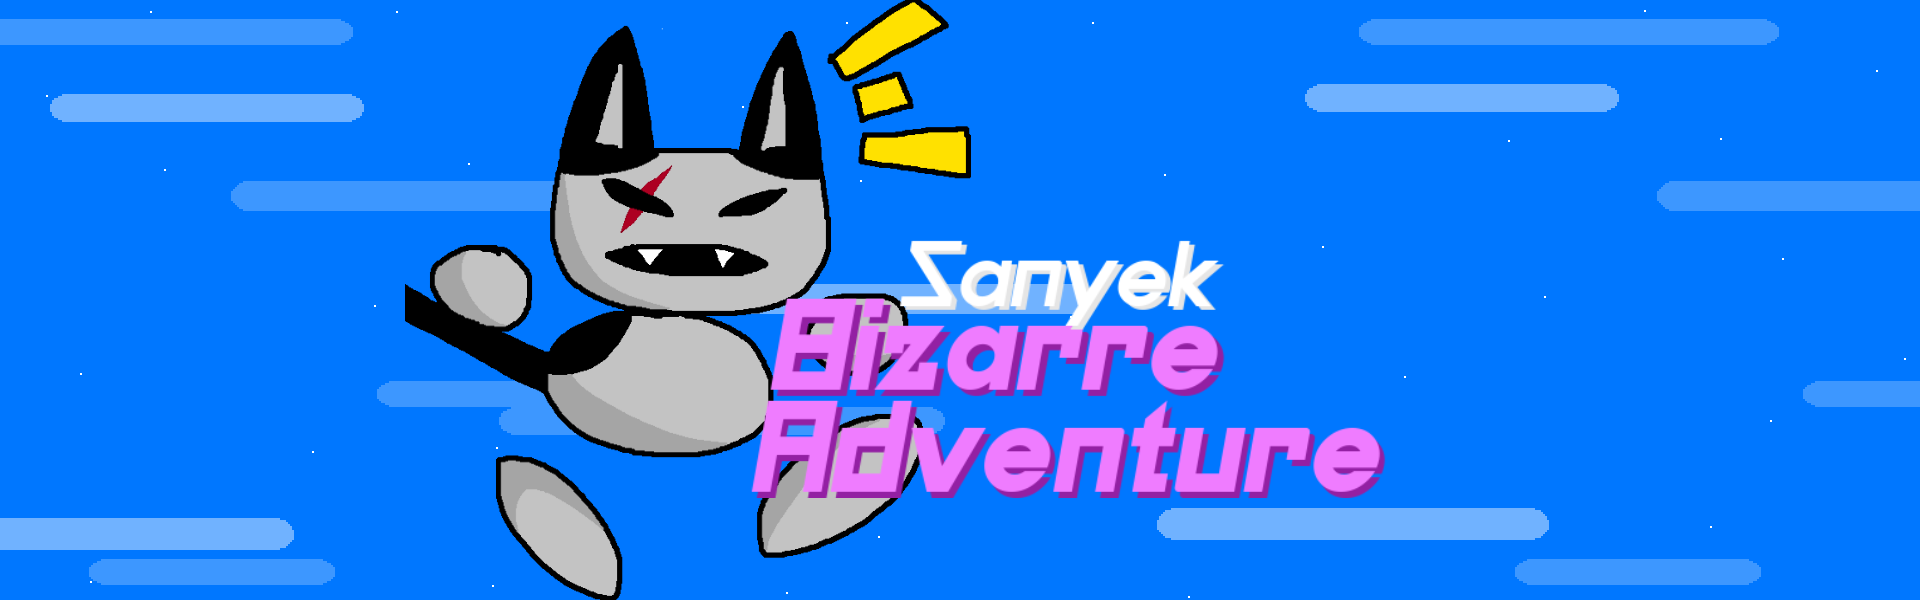 Sanyek's Bizarre Adventure - Mod For "Catto Boi's Bizarre Adventure"